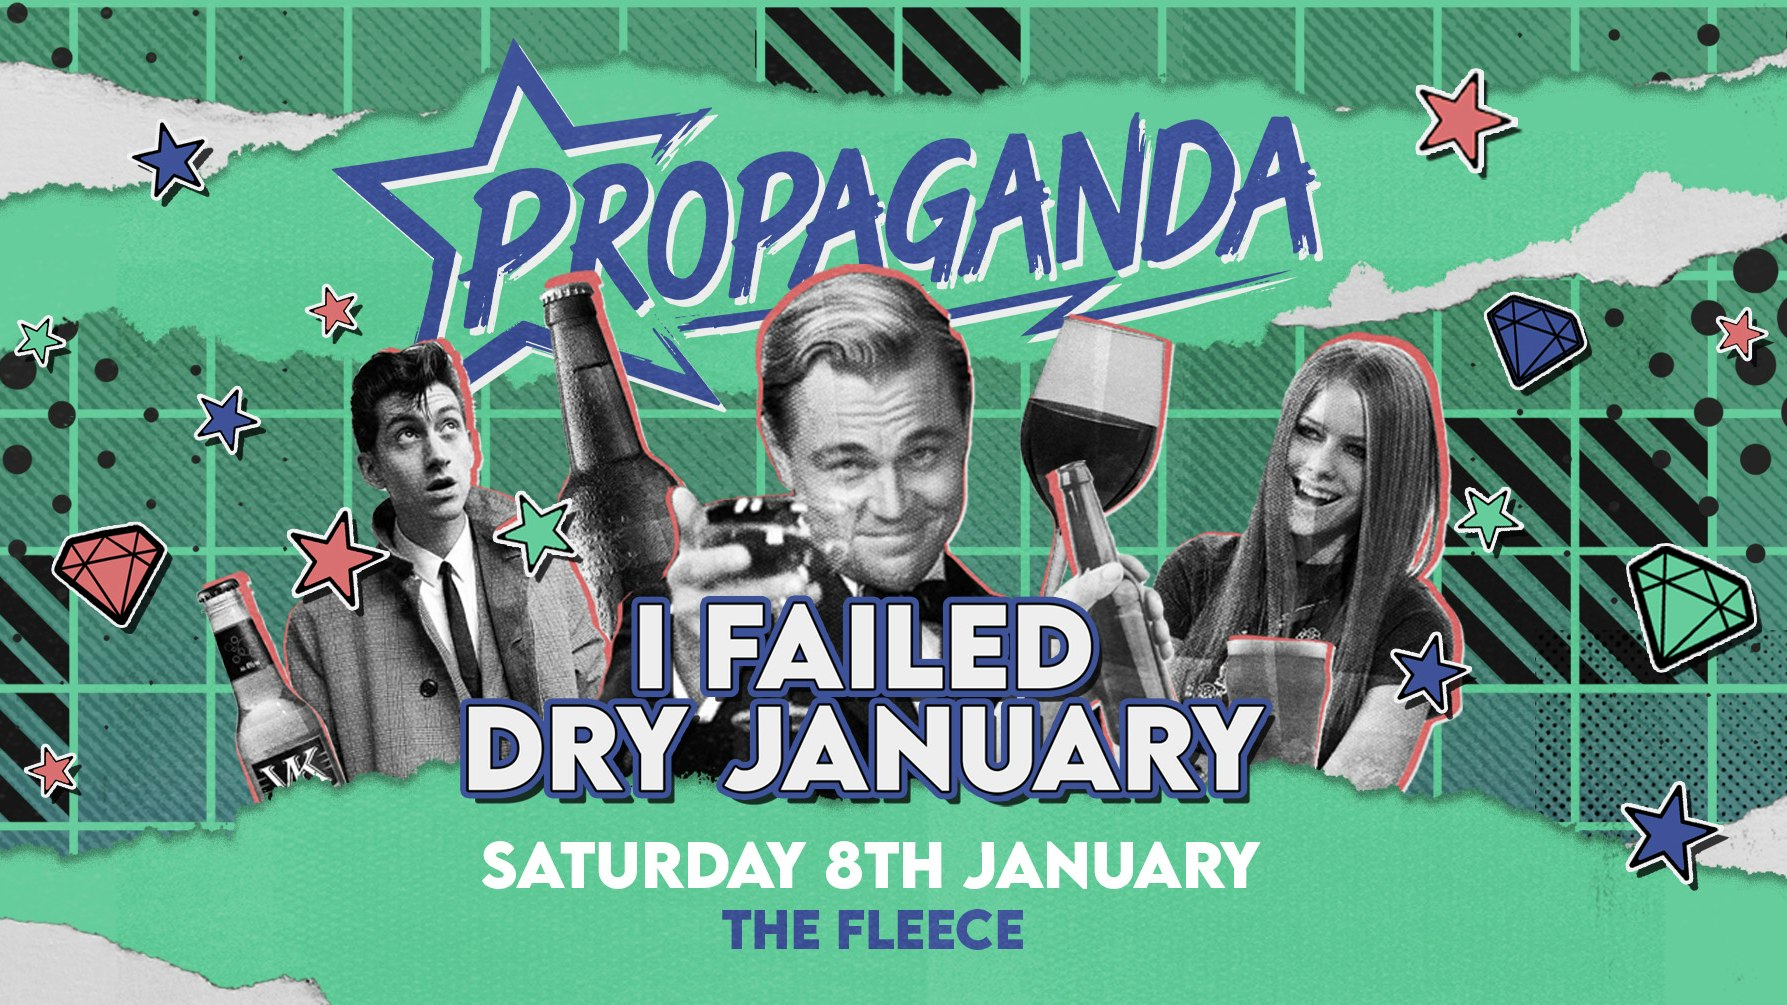 Propaganda Bristol – I Failed Dry January!